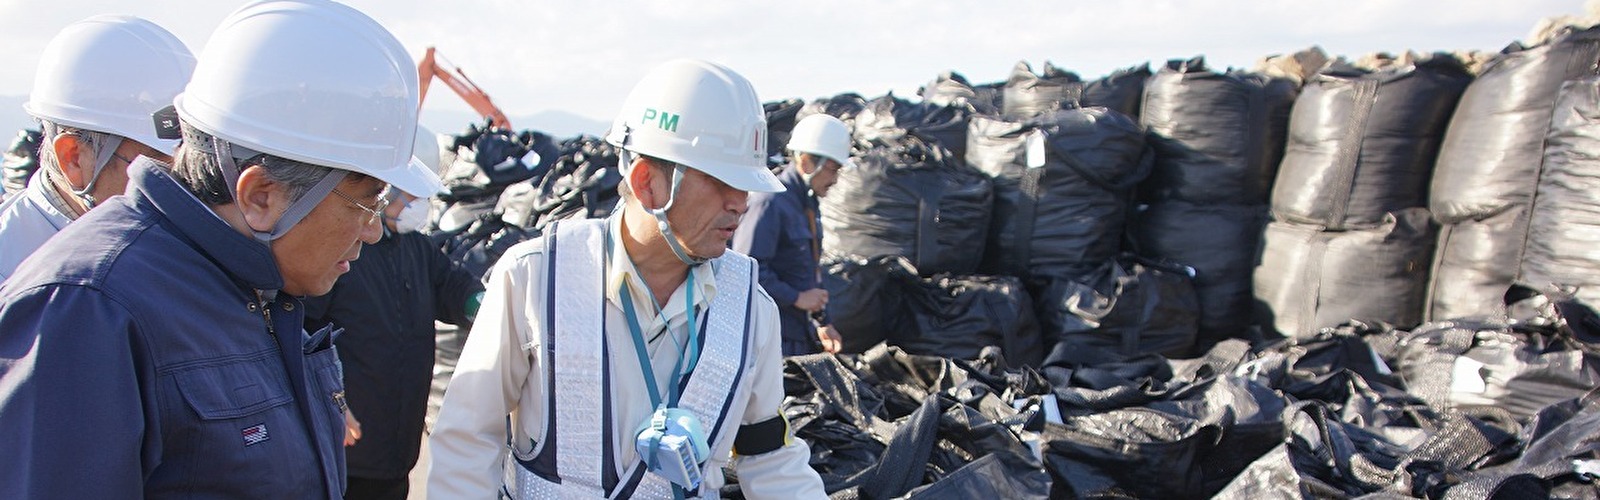 東日本大震災被災地におけるアスベスト調査